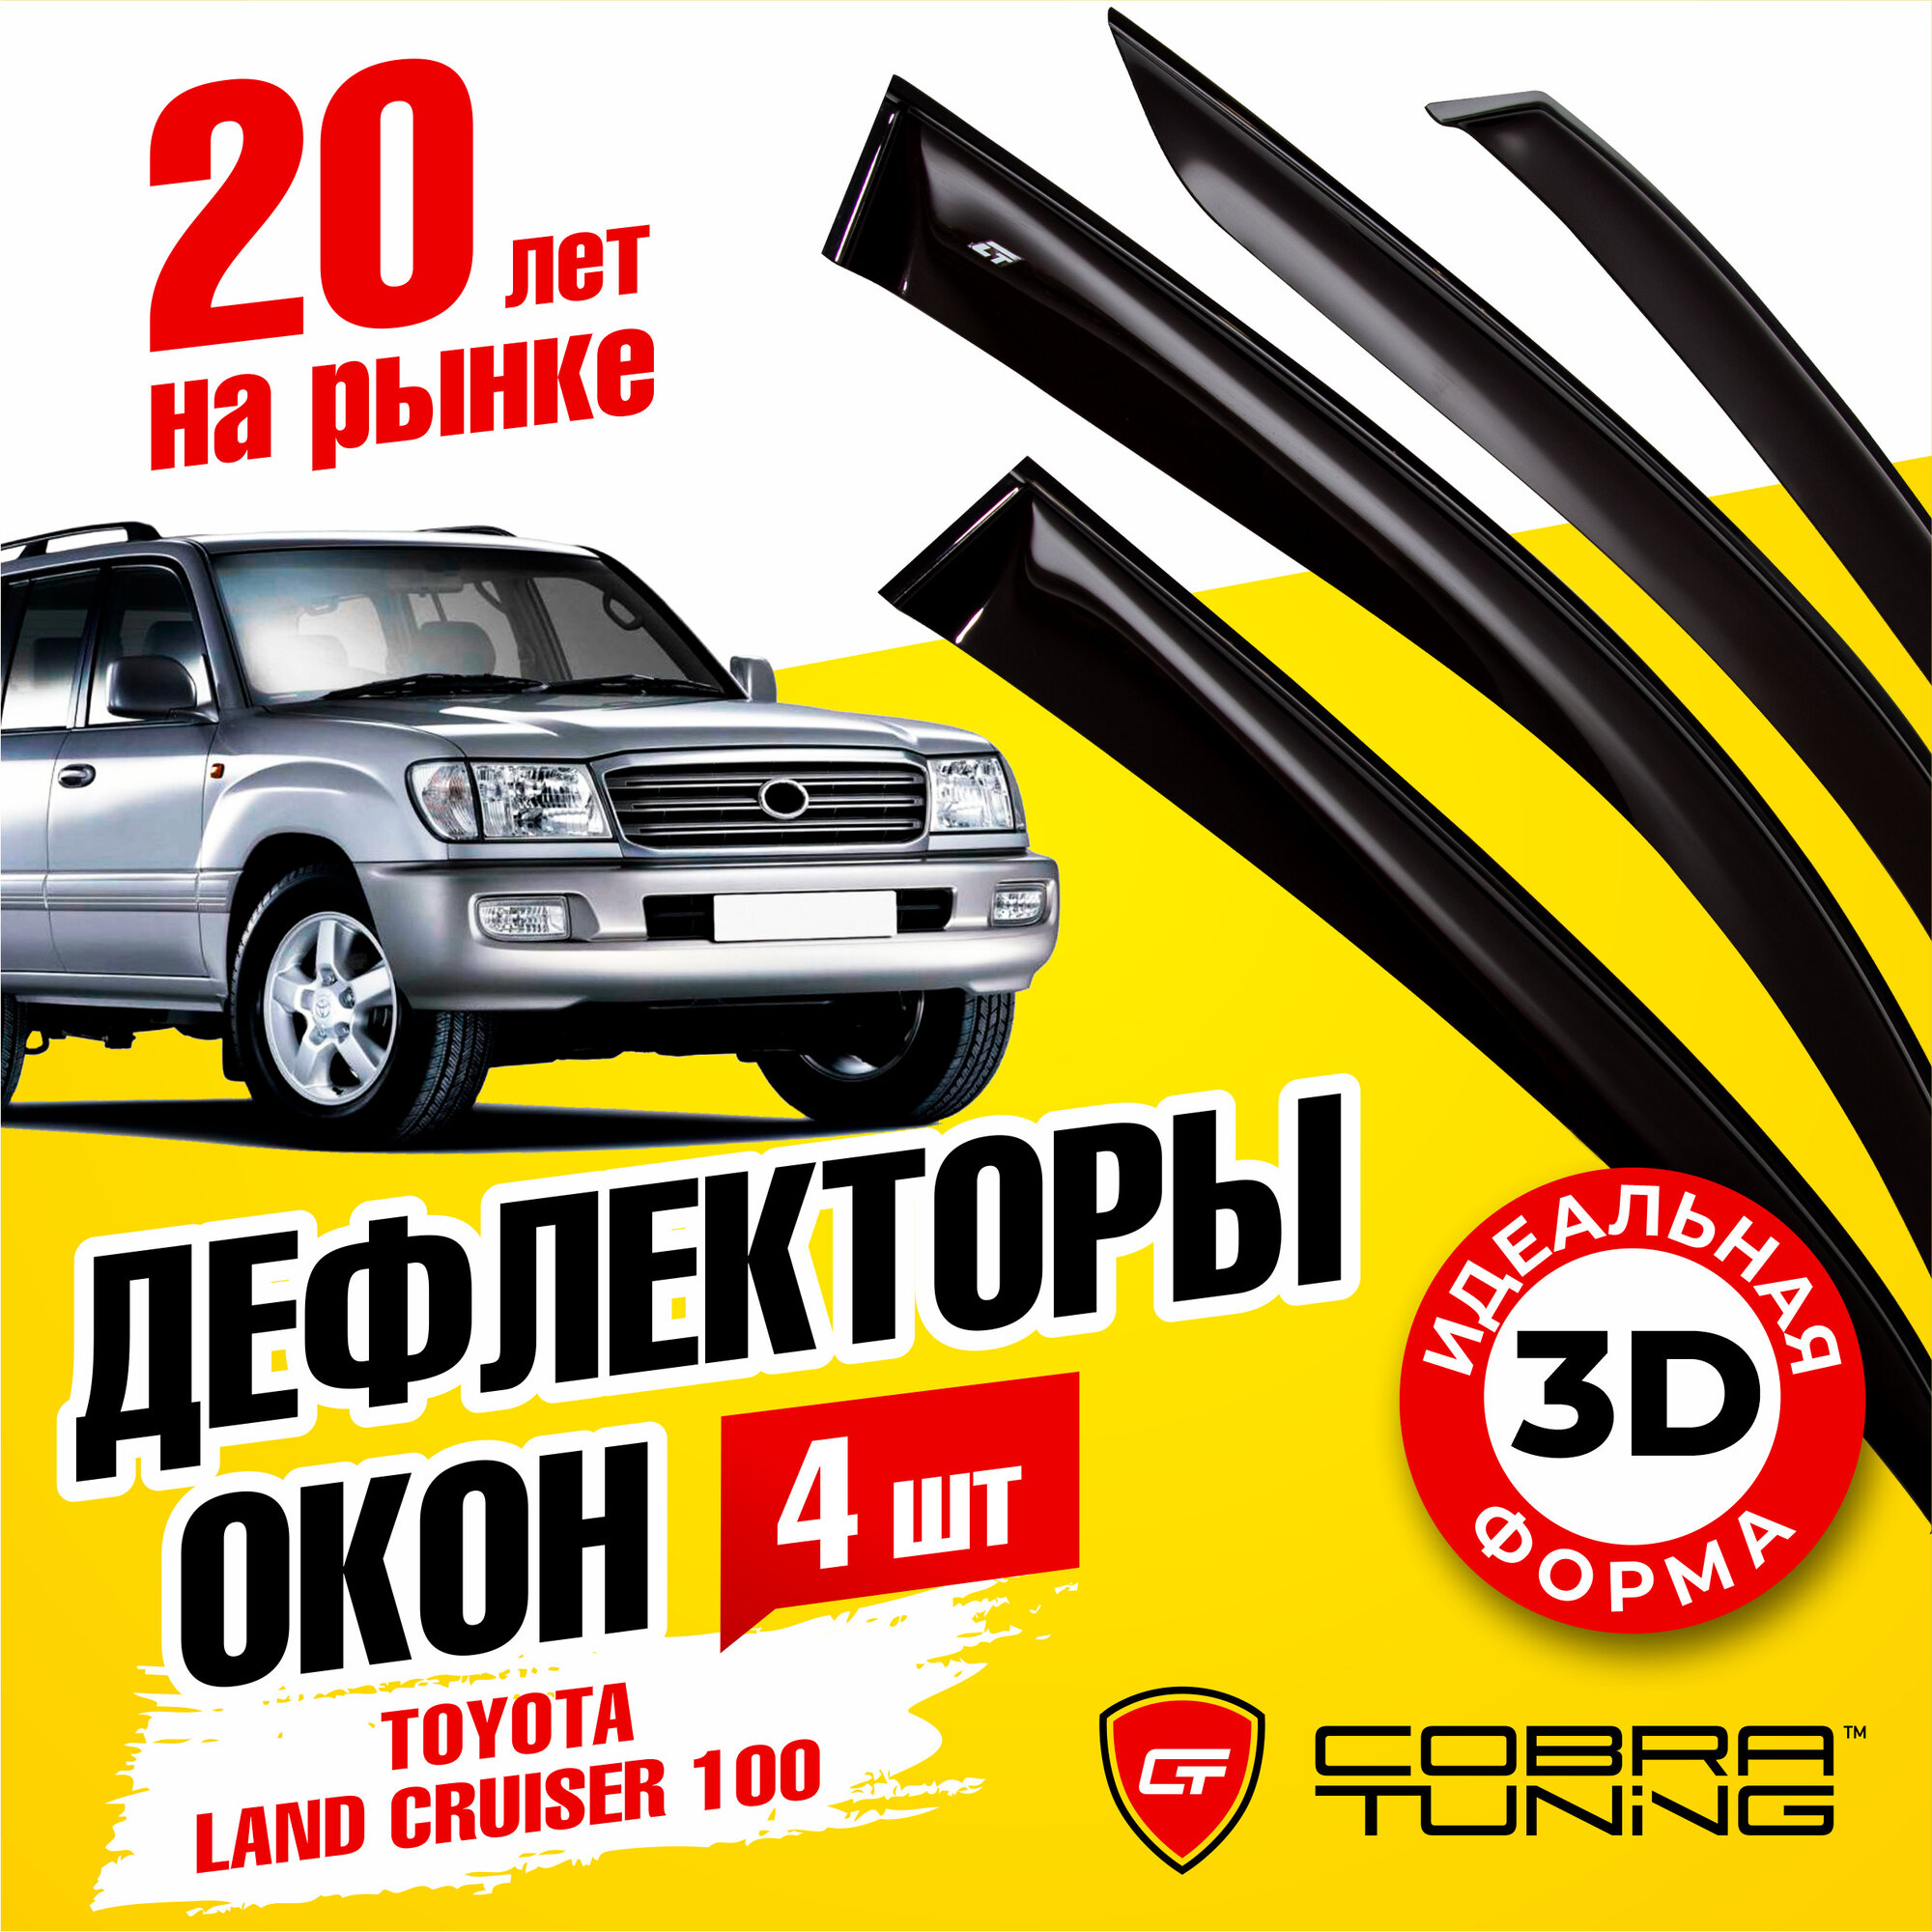 Дефлекторы боковых окон для Toyota Land Cruiser 100 (Тойота Ленд Крузер) 5-ти дверный 1998-2007, ветровики на двери автомобиля, Cobra Tuning